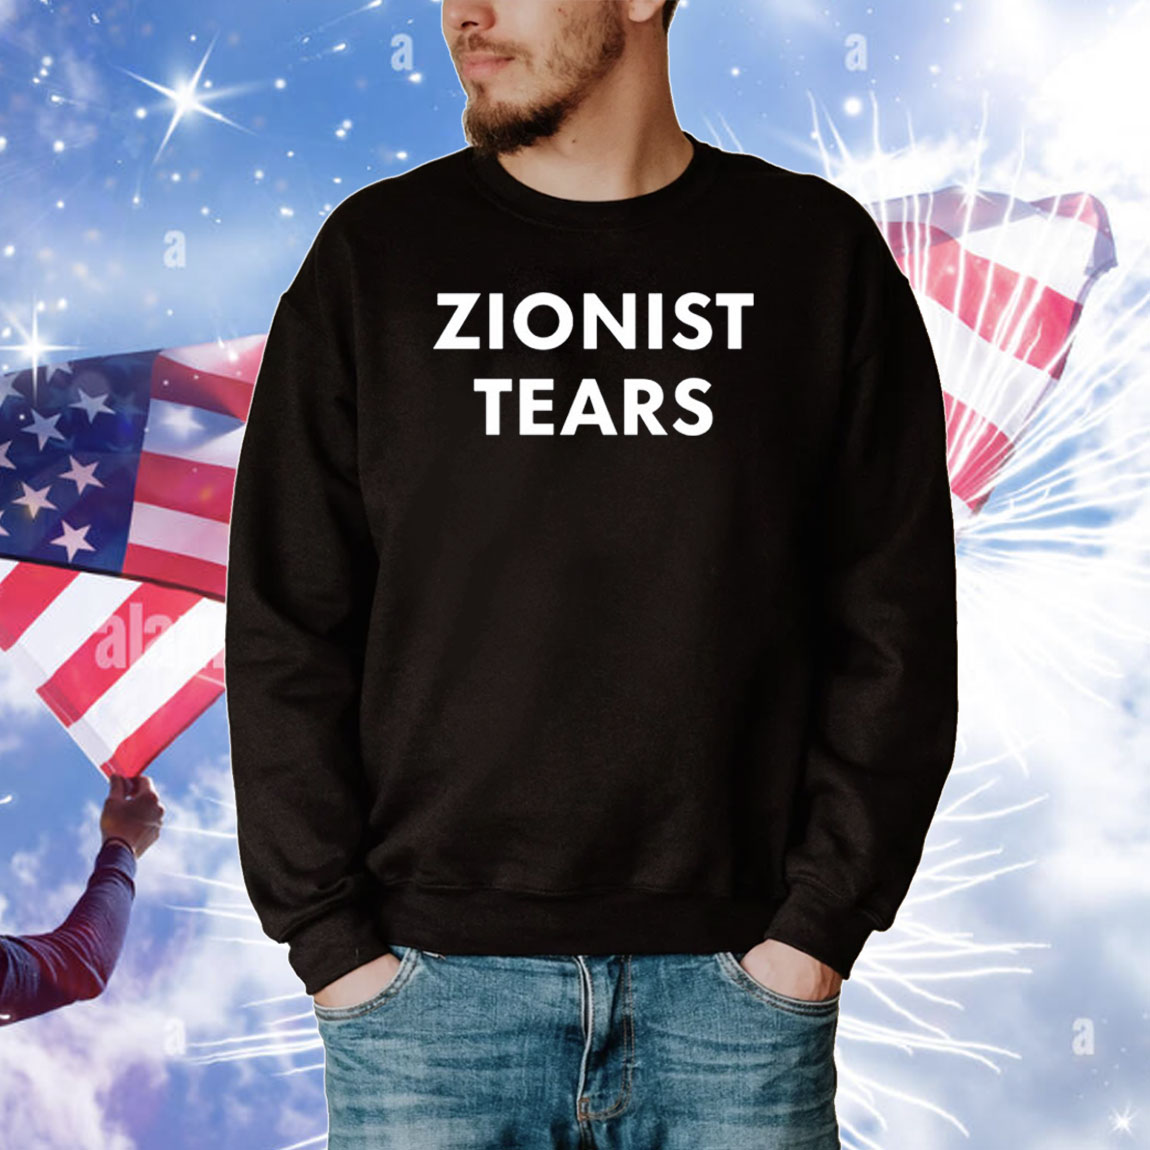 Zionist Tears T-Shirts